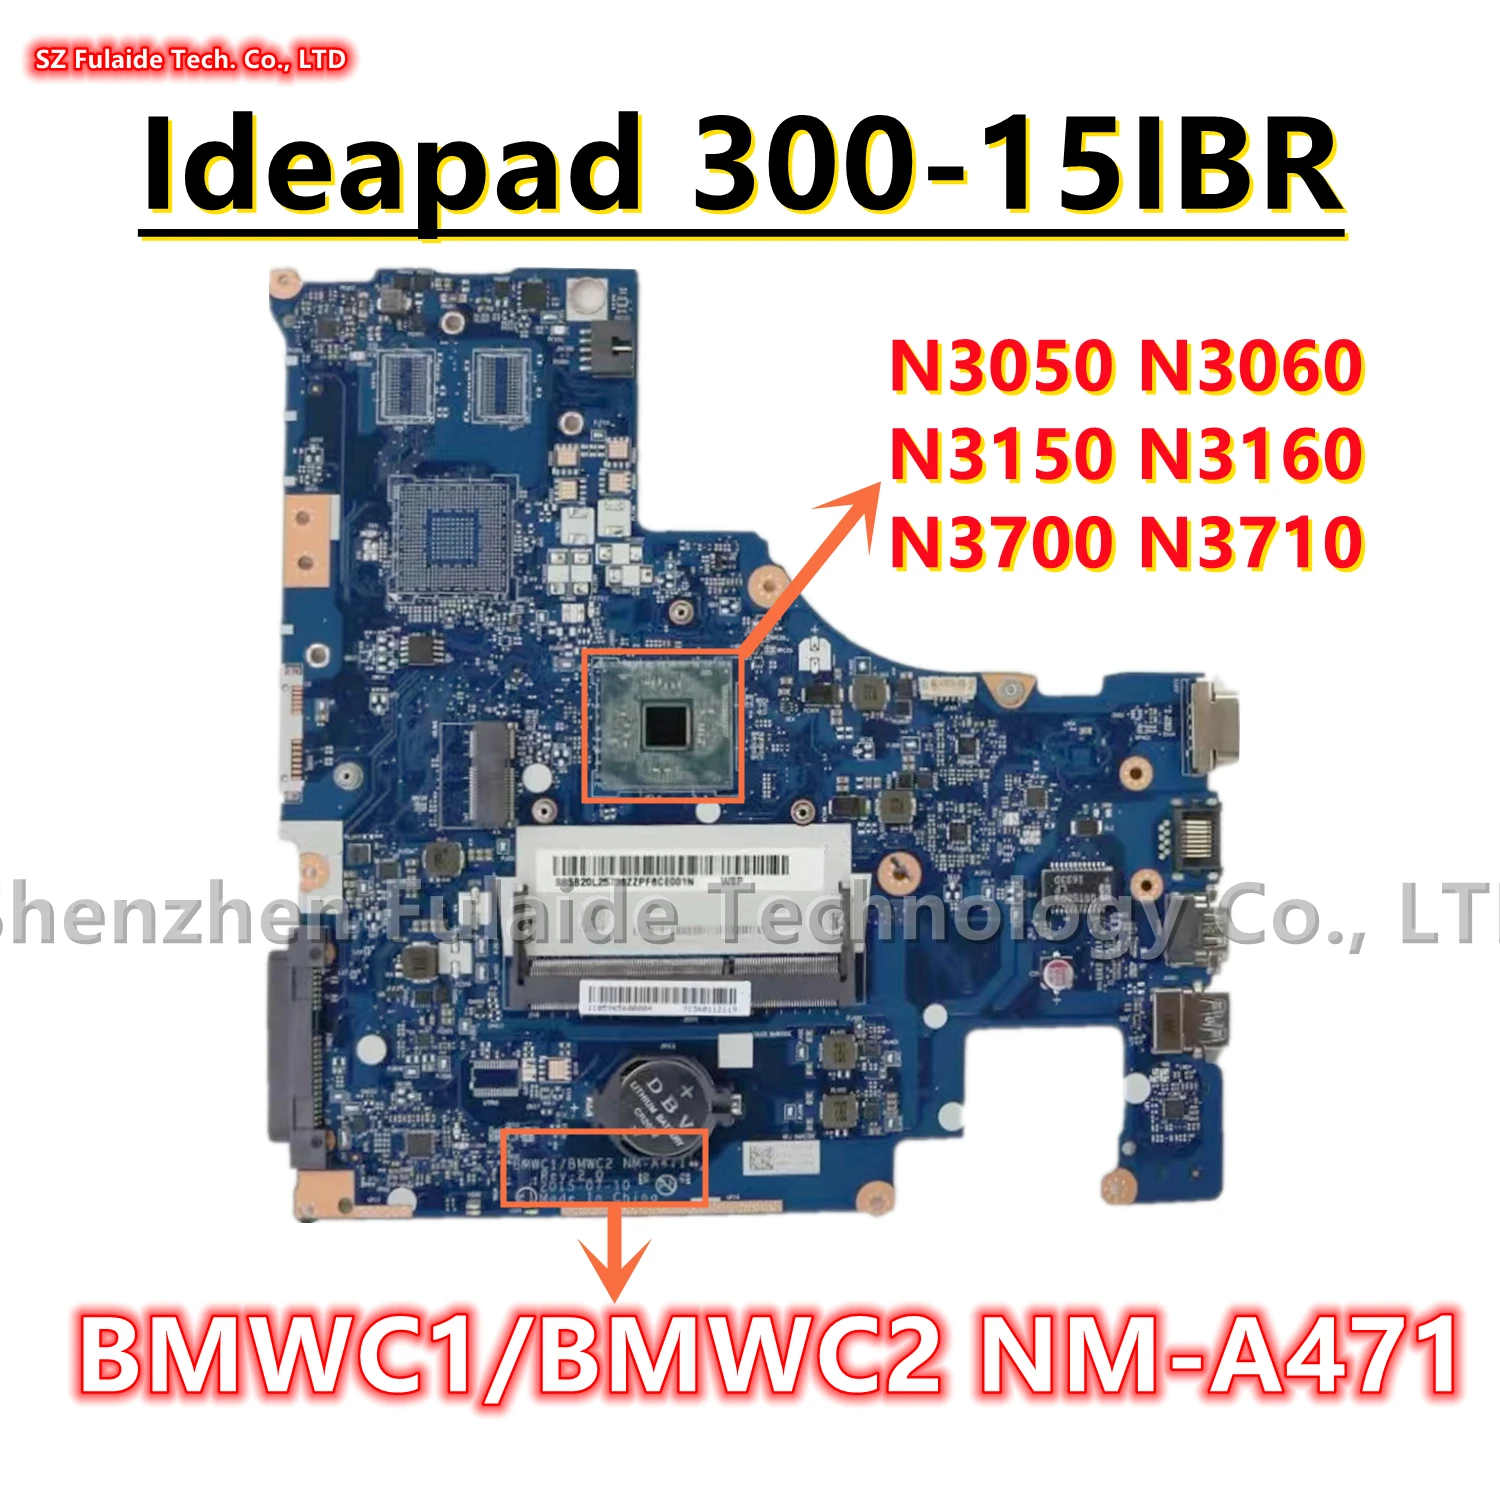 

BMWC1/BMWC2 NM-A471 For Lenovo Ideapad 300-15IBR Laptop Motherboard With N3050 N3060 N3150 N3160 N3700 N3710 CPU DDR3 100% OK